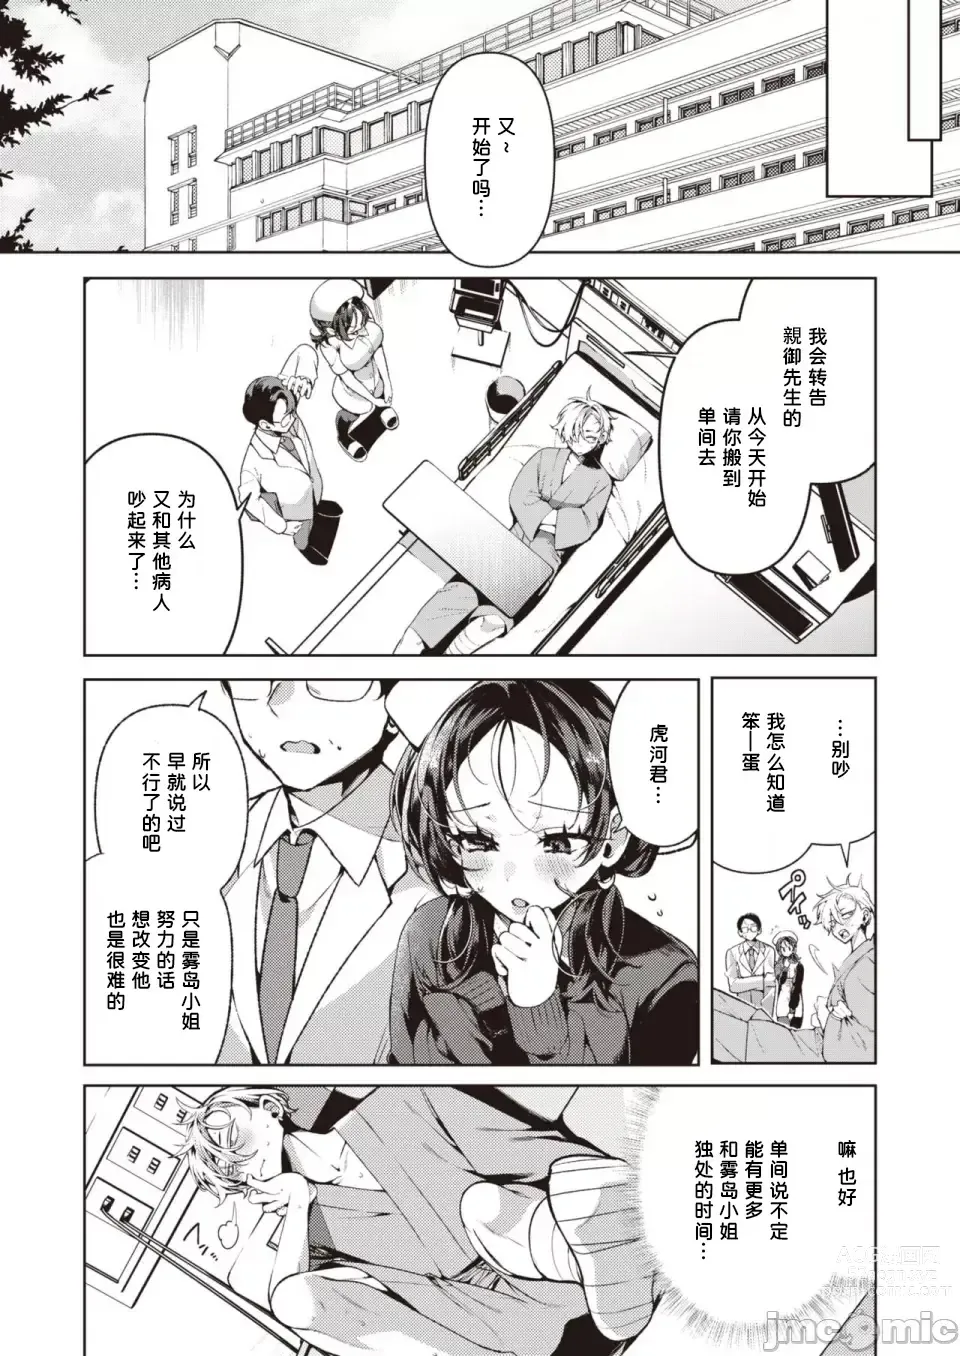 Page 6 of manga Yasashii? Nurse no Kirishima-san